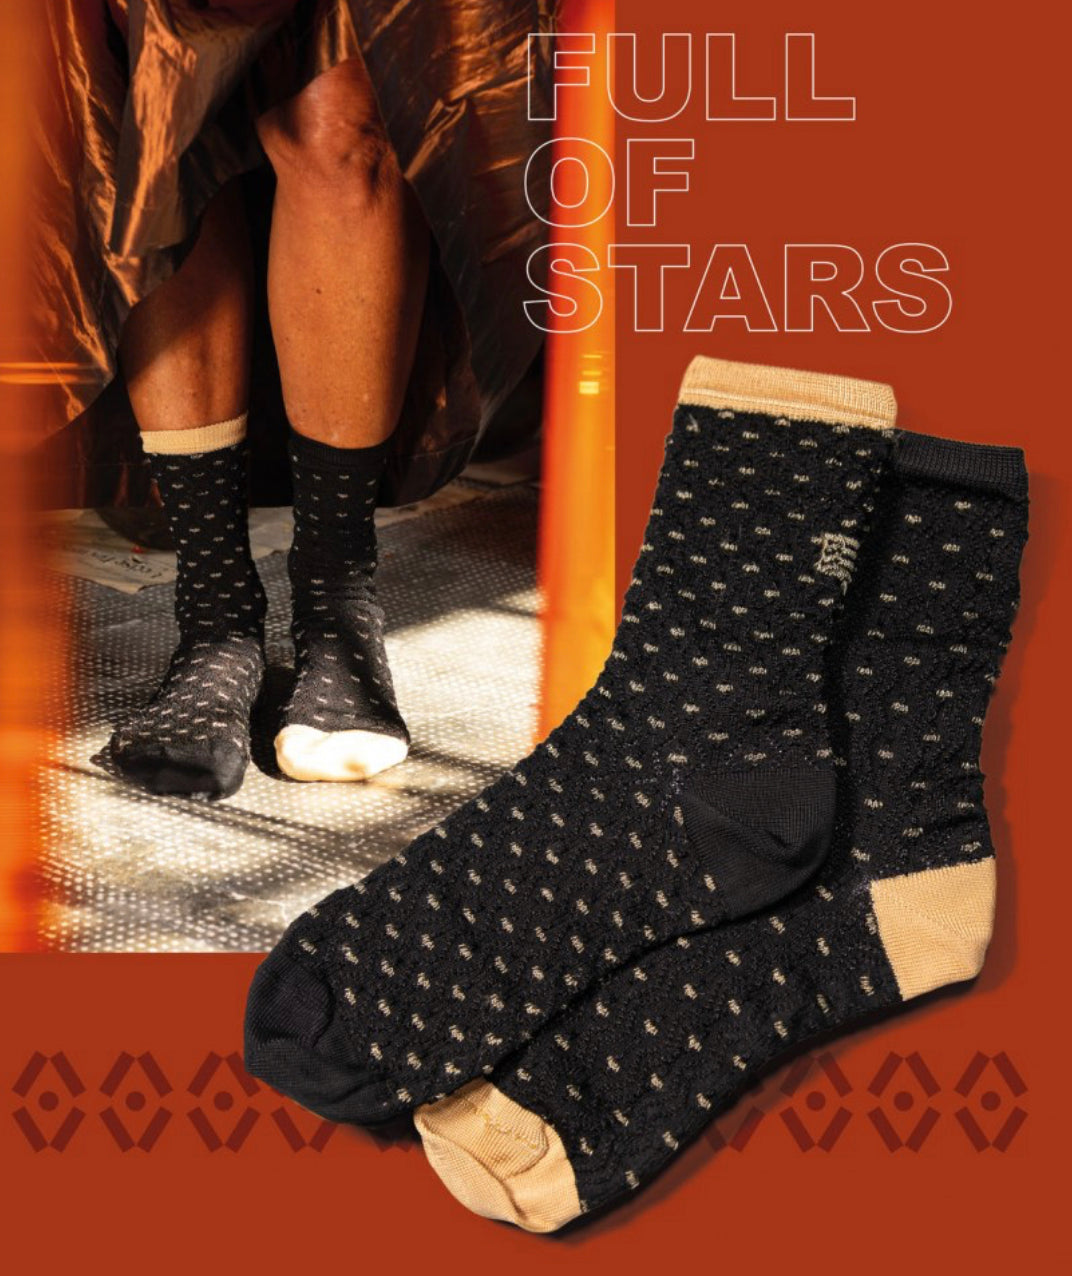 Calzini Spaiati Oybo’ Untuned Socks “Full Of Stars”